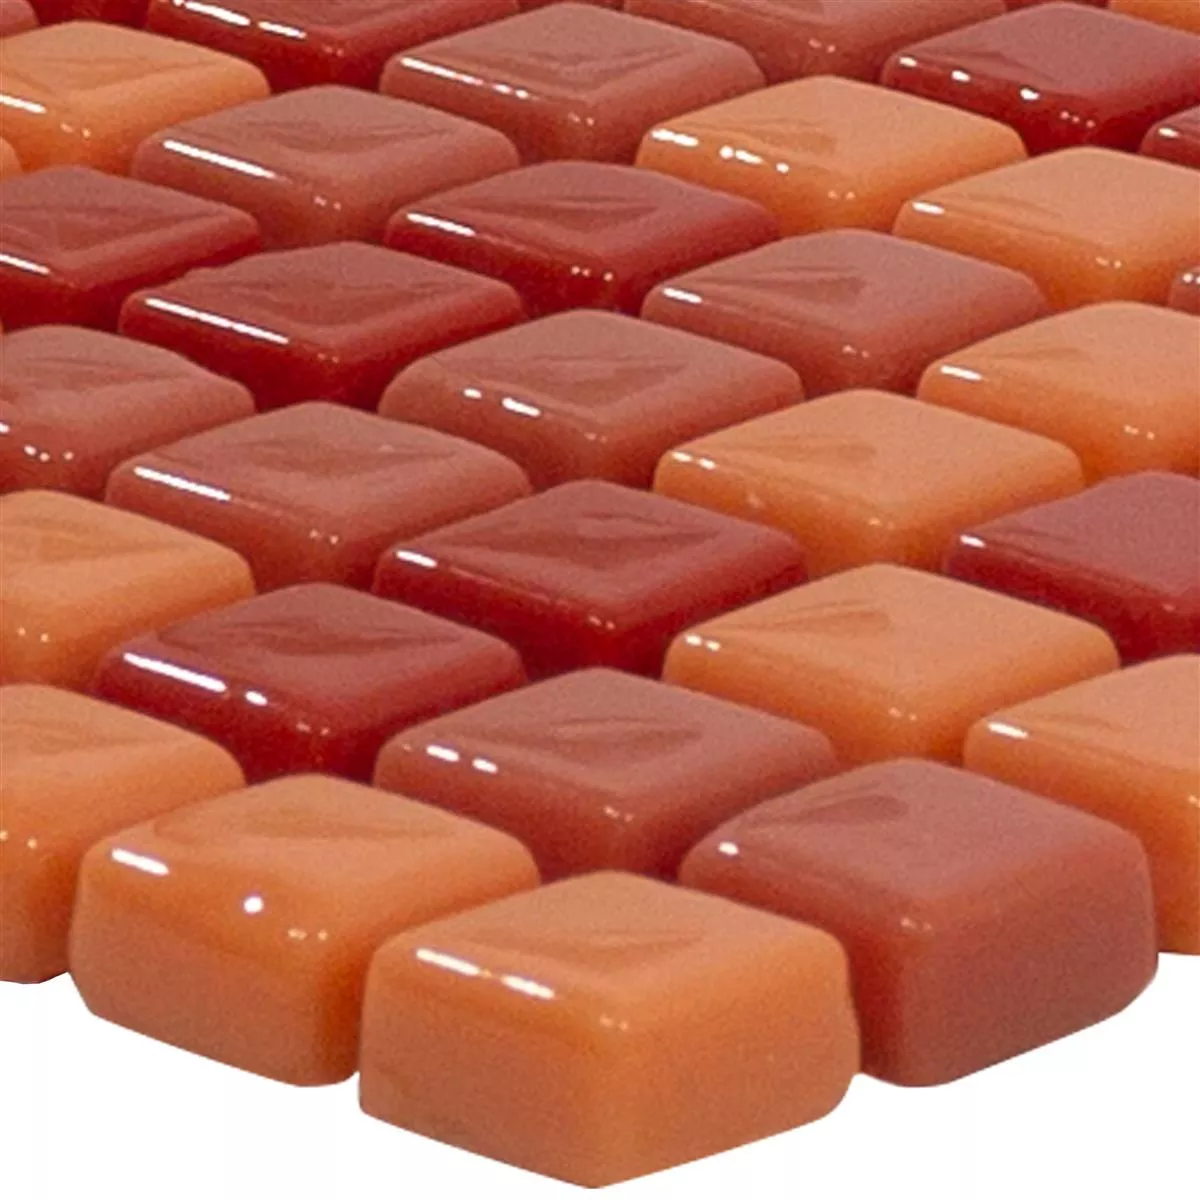 Mosaico Di Vetro Piastrelle Delight Rosso-Arancione Mix